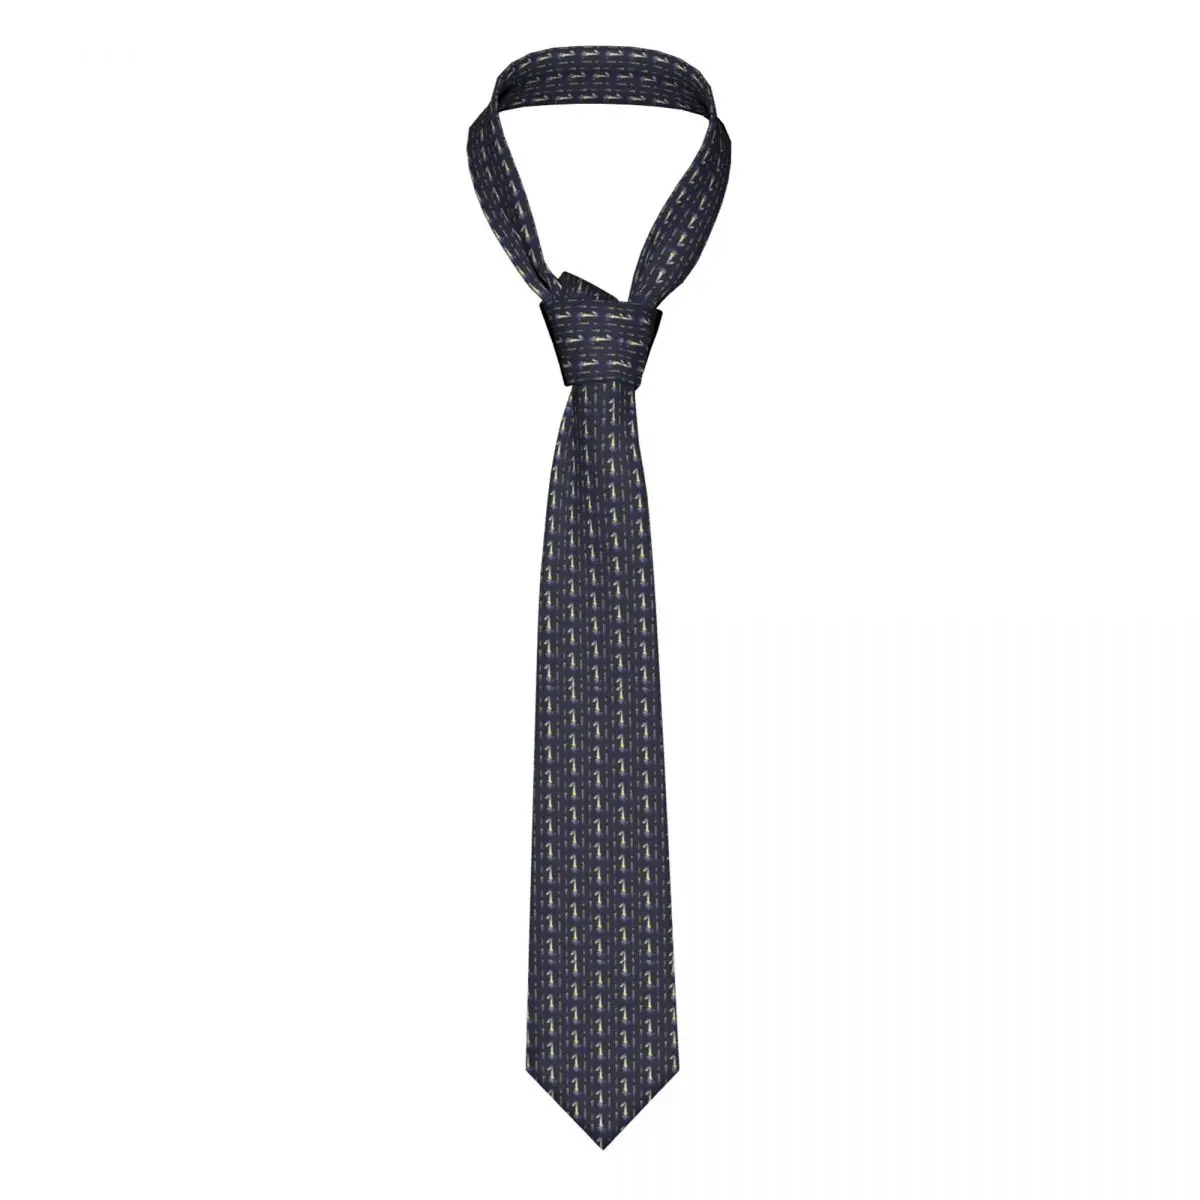 

Женский галстук, галстук с рисунком блузки на рассвет, галстуки на шею, деловые аксессуары из полиэстера и шелка, мужской галстук